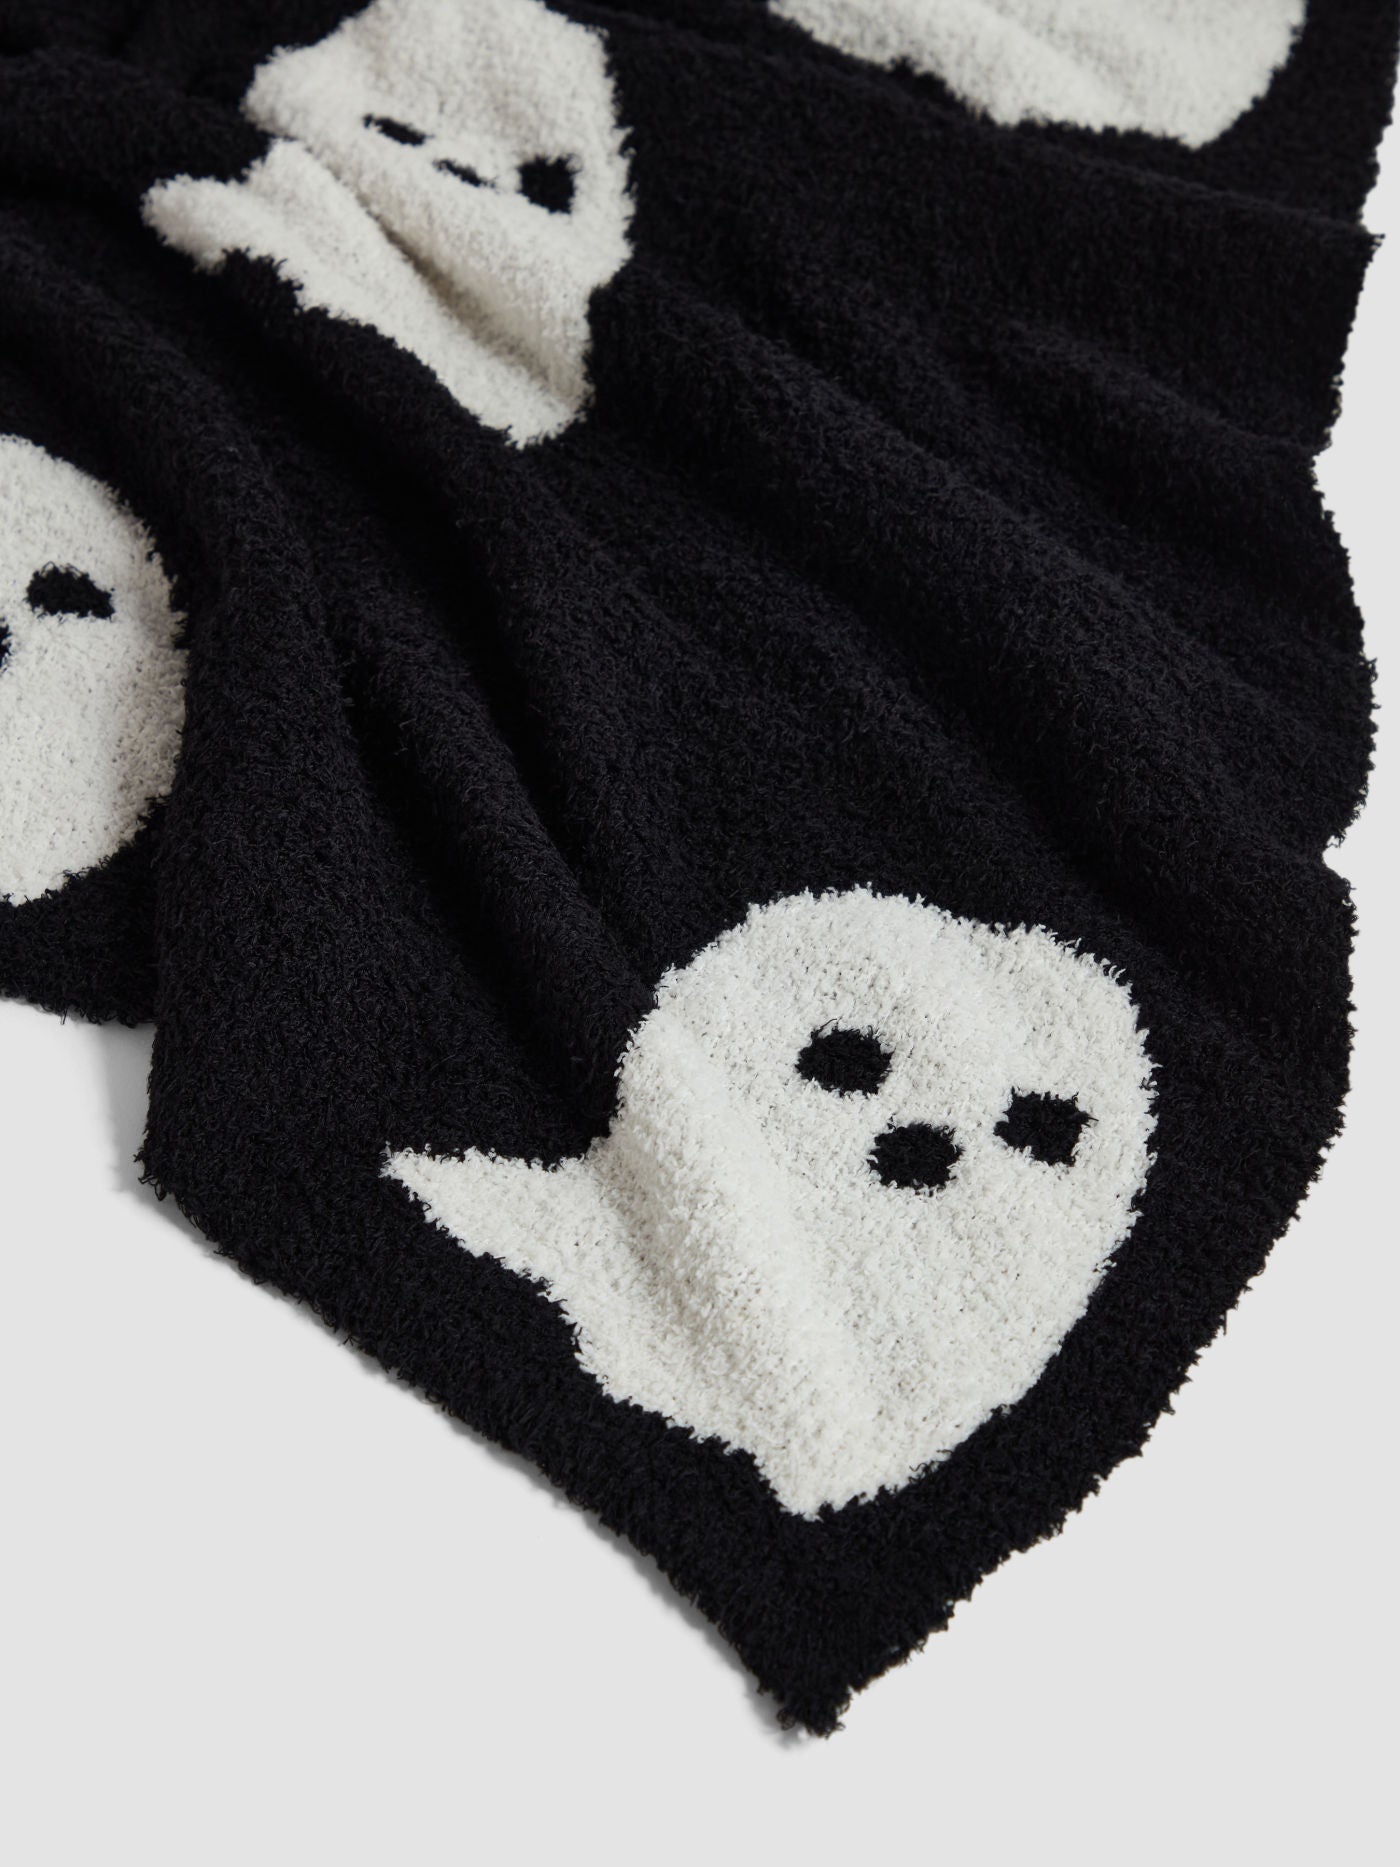 Spooky Ghost Blanket